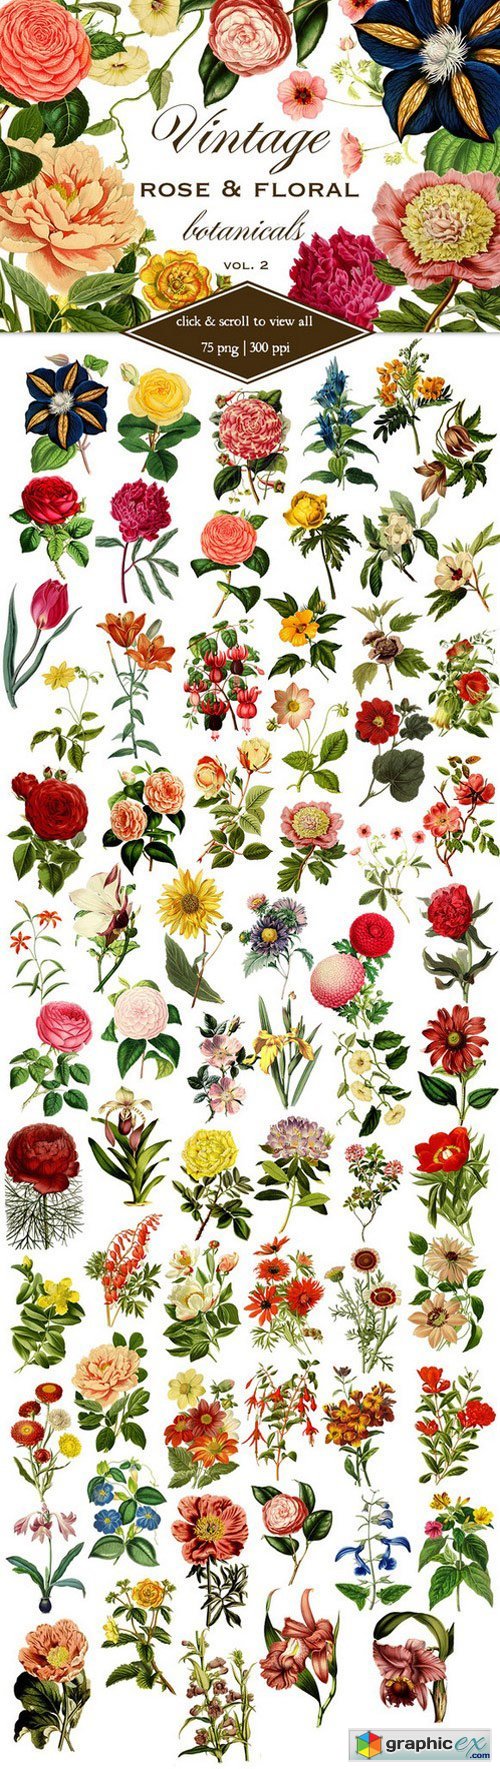 Vintage Rose & Floral Botanicals 2